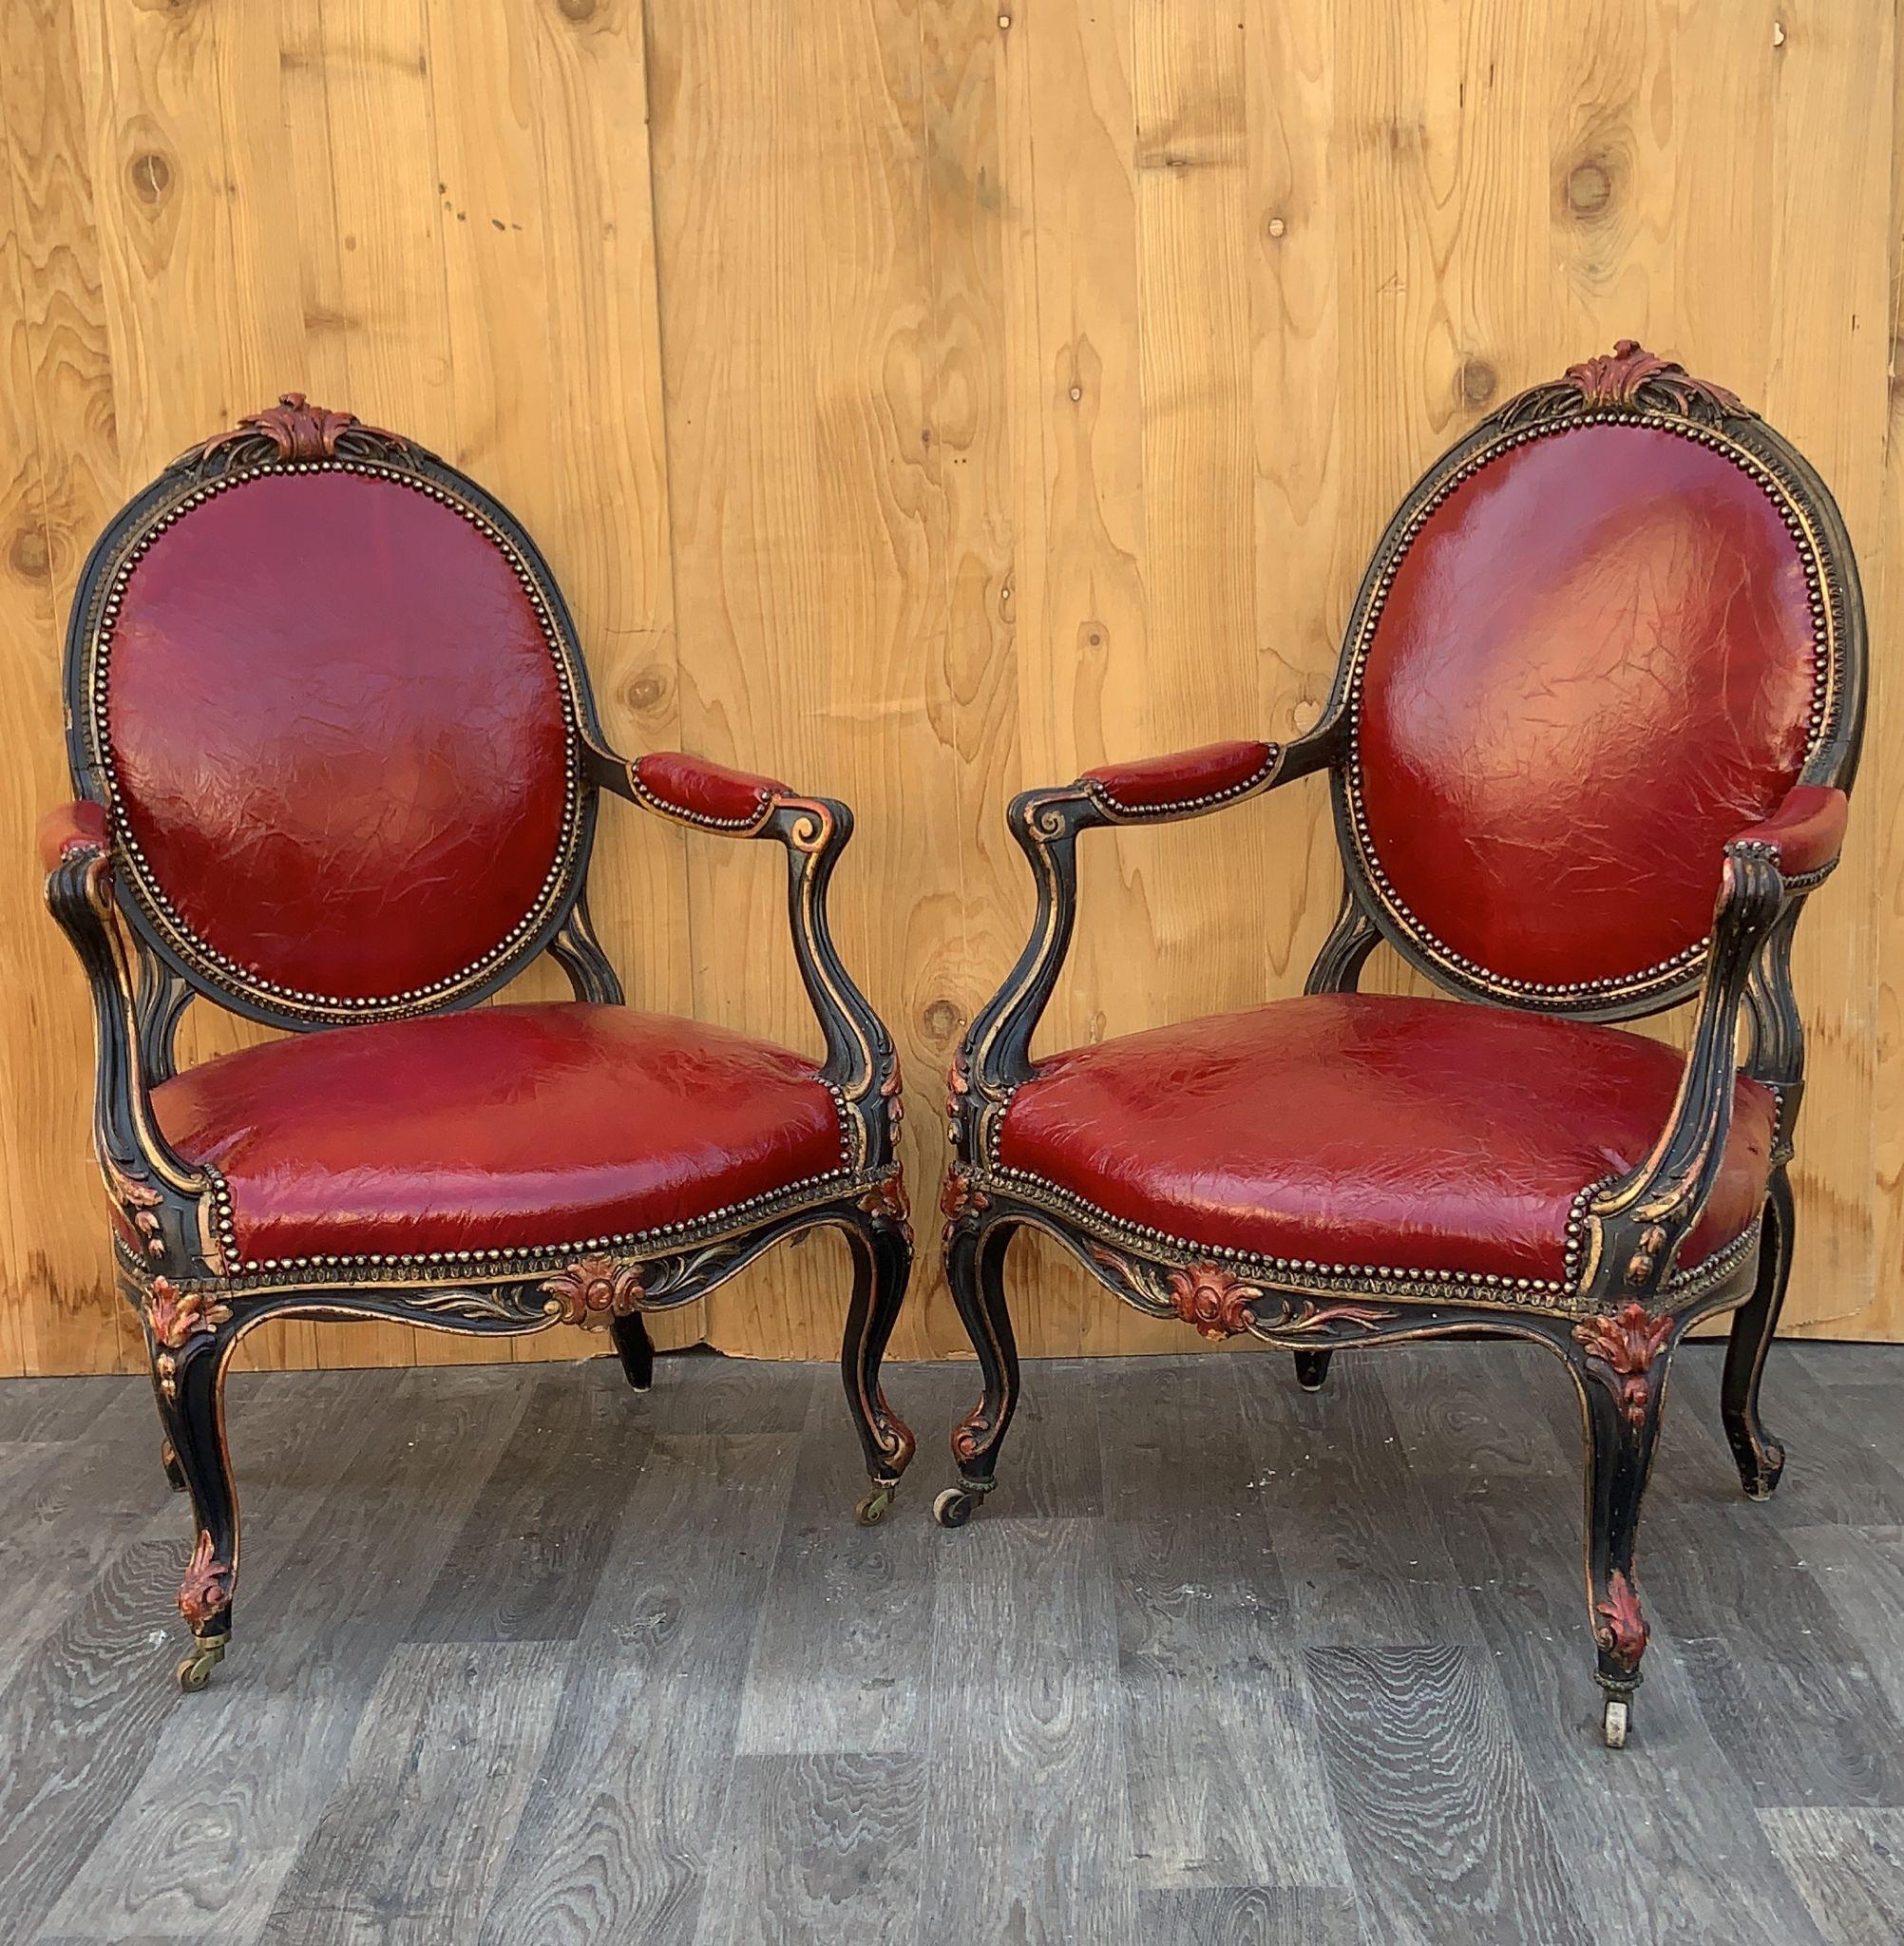 Anciens fauteuils français Napoléon III sculptés, nouvellement tapissés de cuir italien vieilli - Paire 

Paire unique de fauteuils d'époque Napoléon III, avec structure curieuse et accoudoirs sur pieds. Le dossier haut et arrondi, l'assise et les